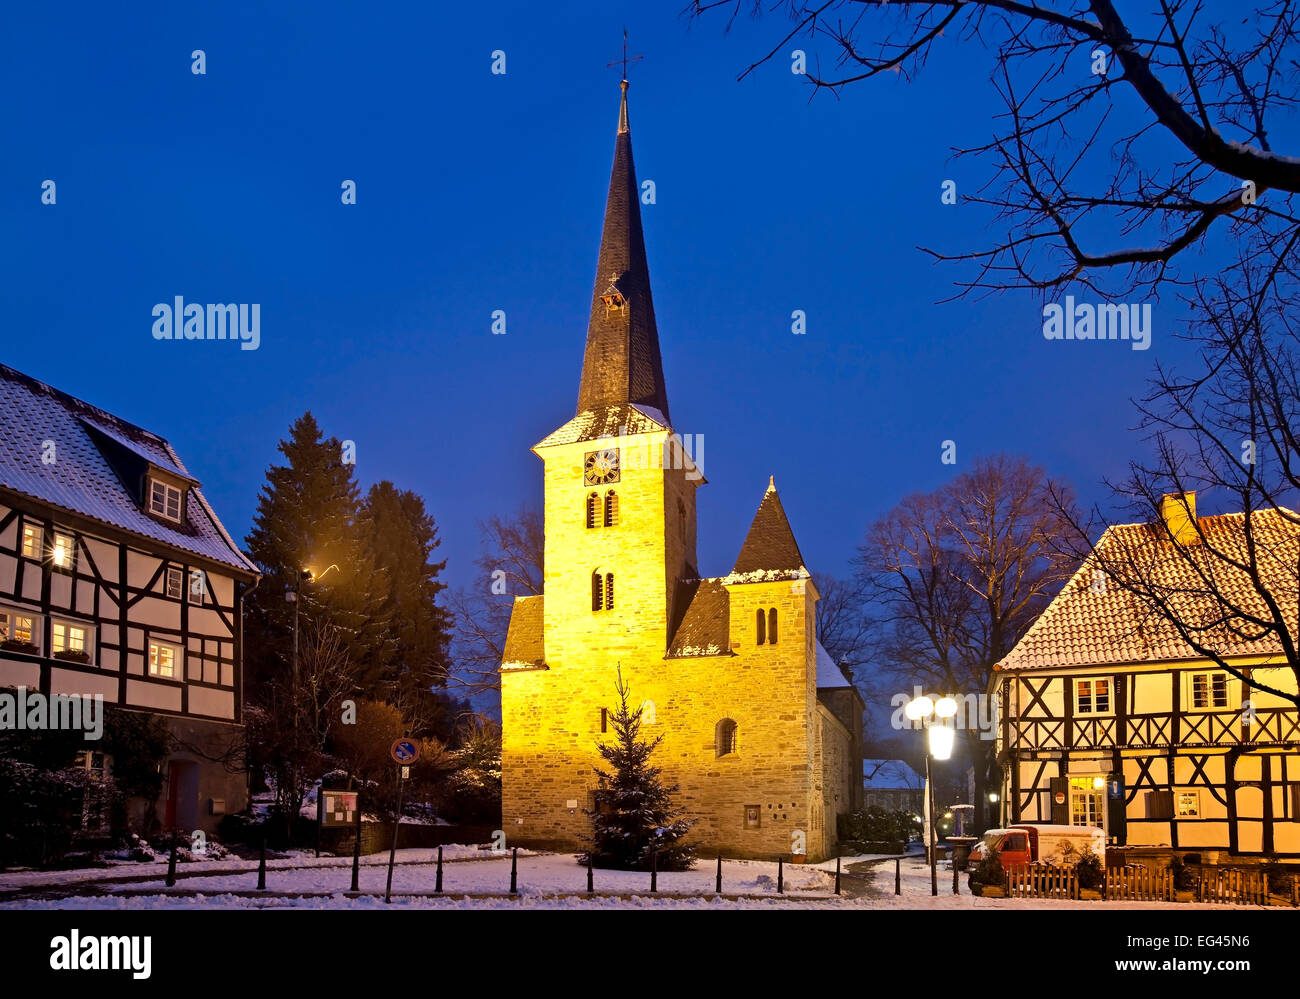 Die Dorfkirche im historischen Dorfzentrum von Wengern, Stadt Wetter, Ruhr, Nordrhein-Westfalen, Deutschland, Europa Banque D'Images